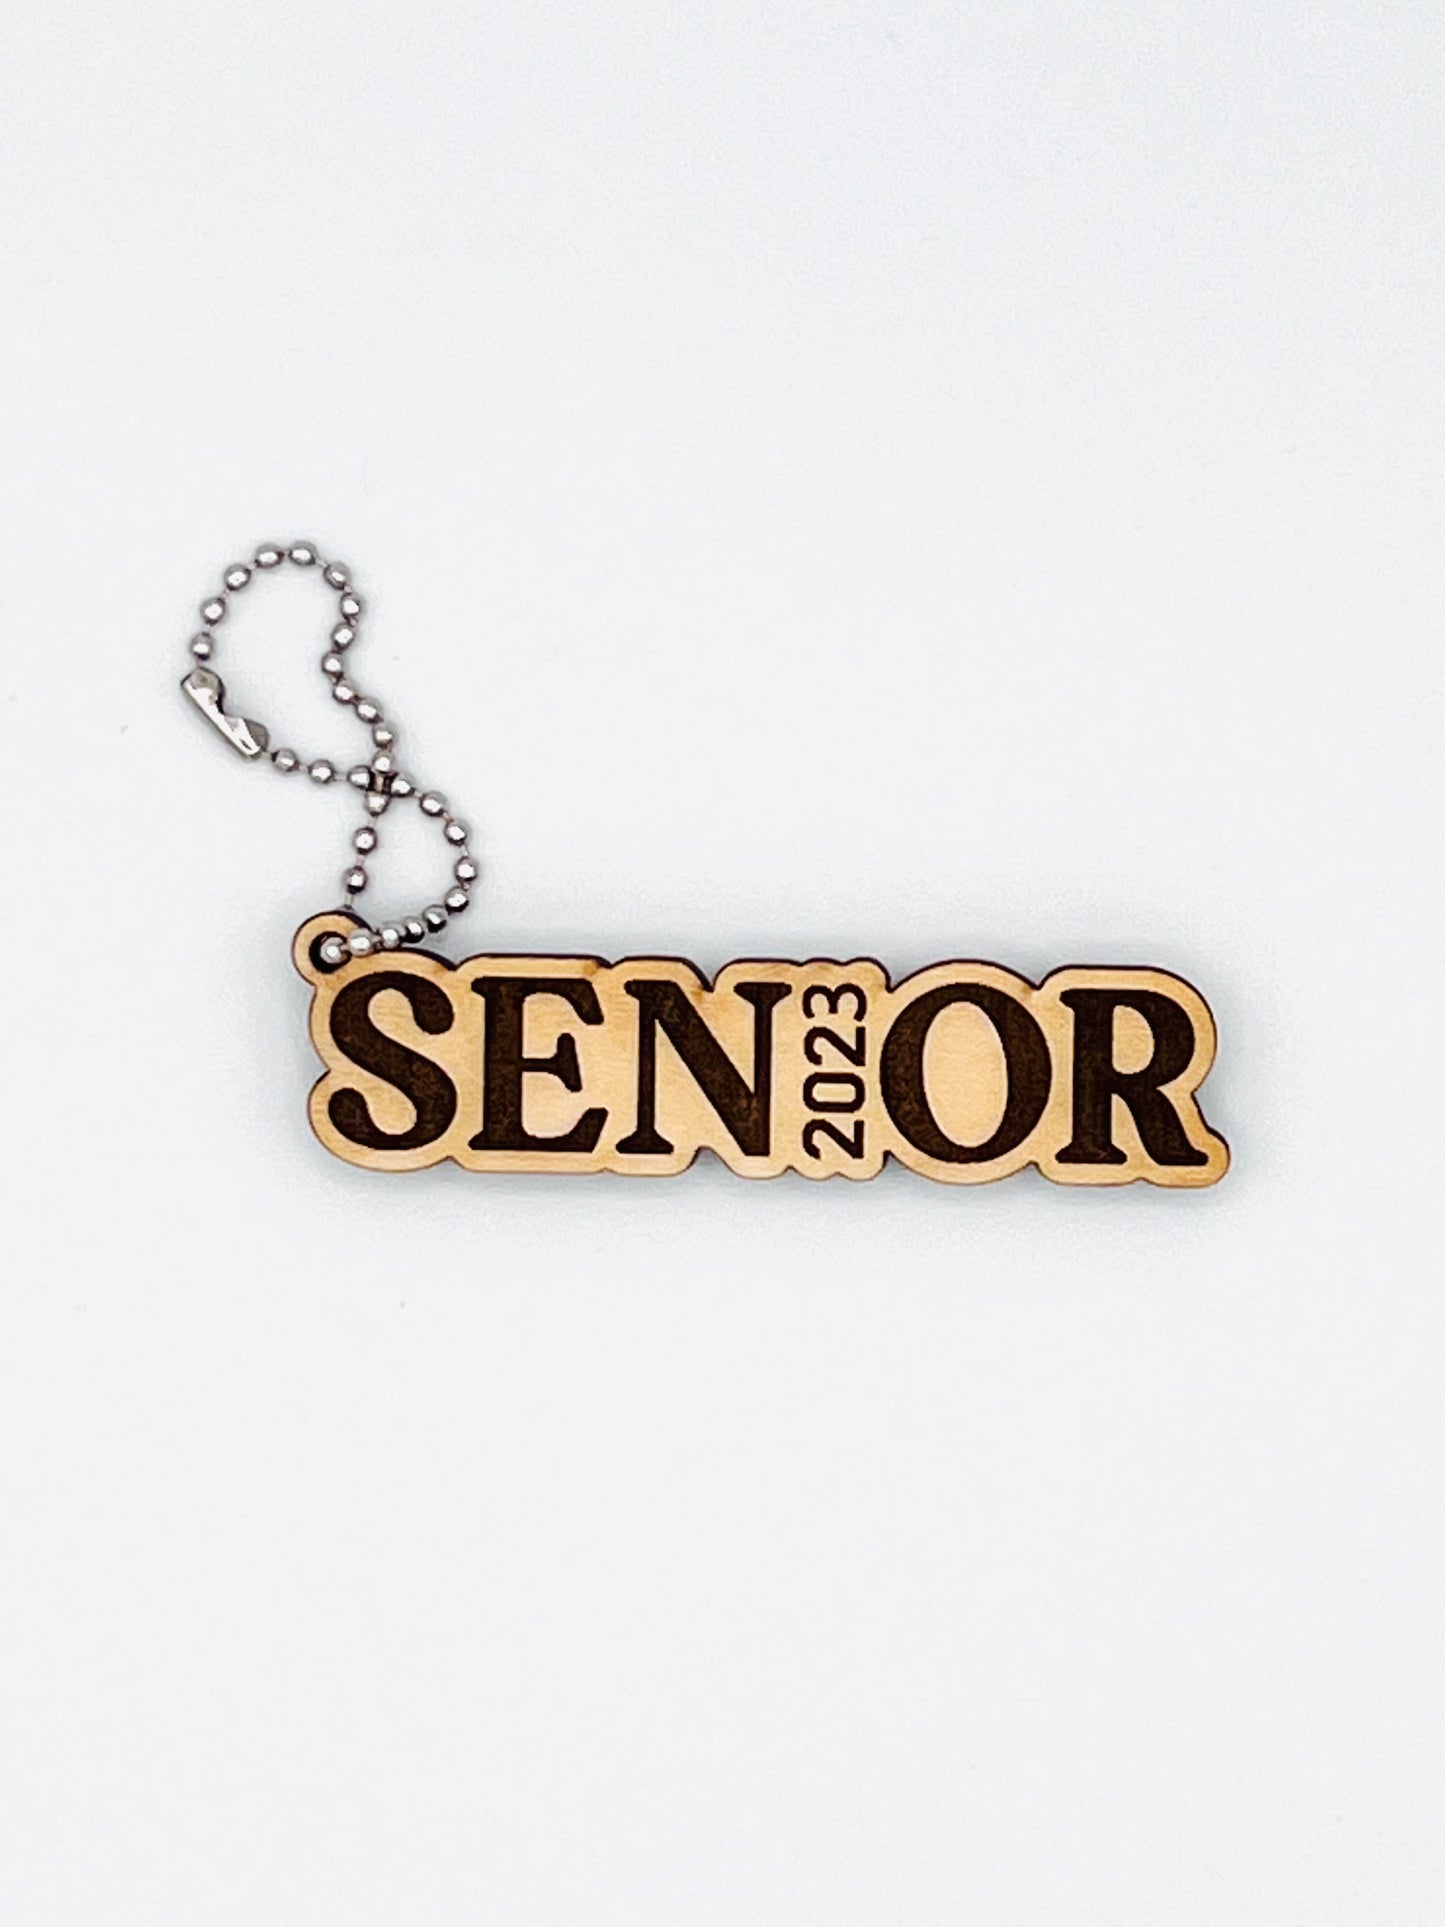 Senior 2023 Keychain